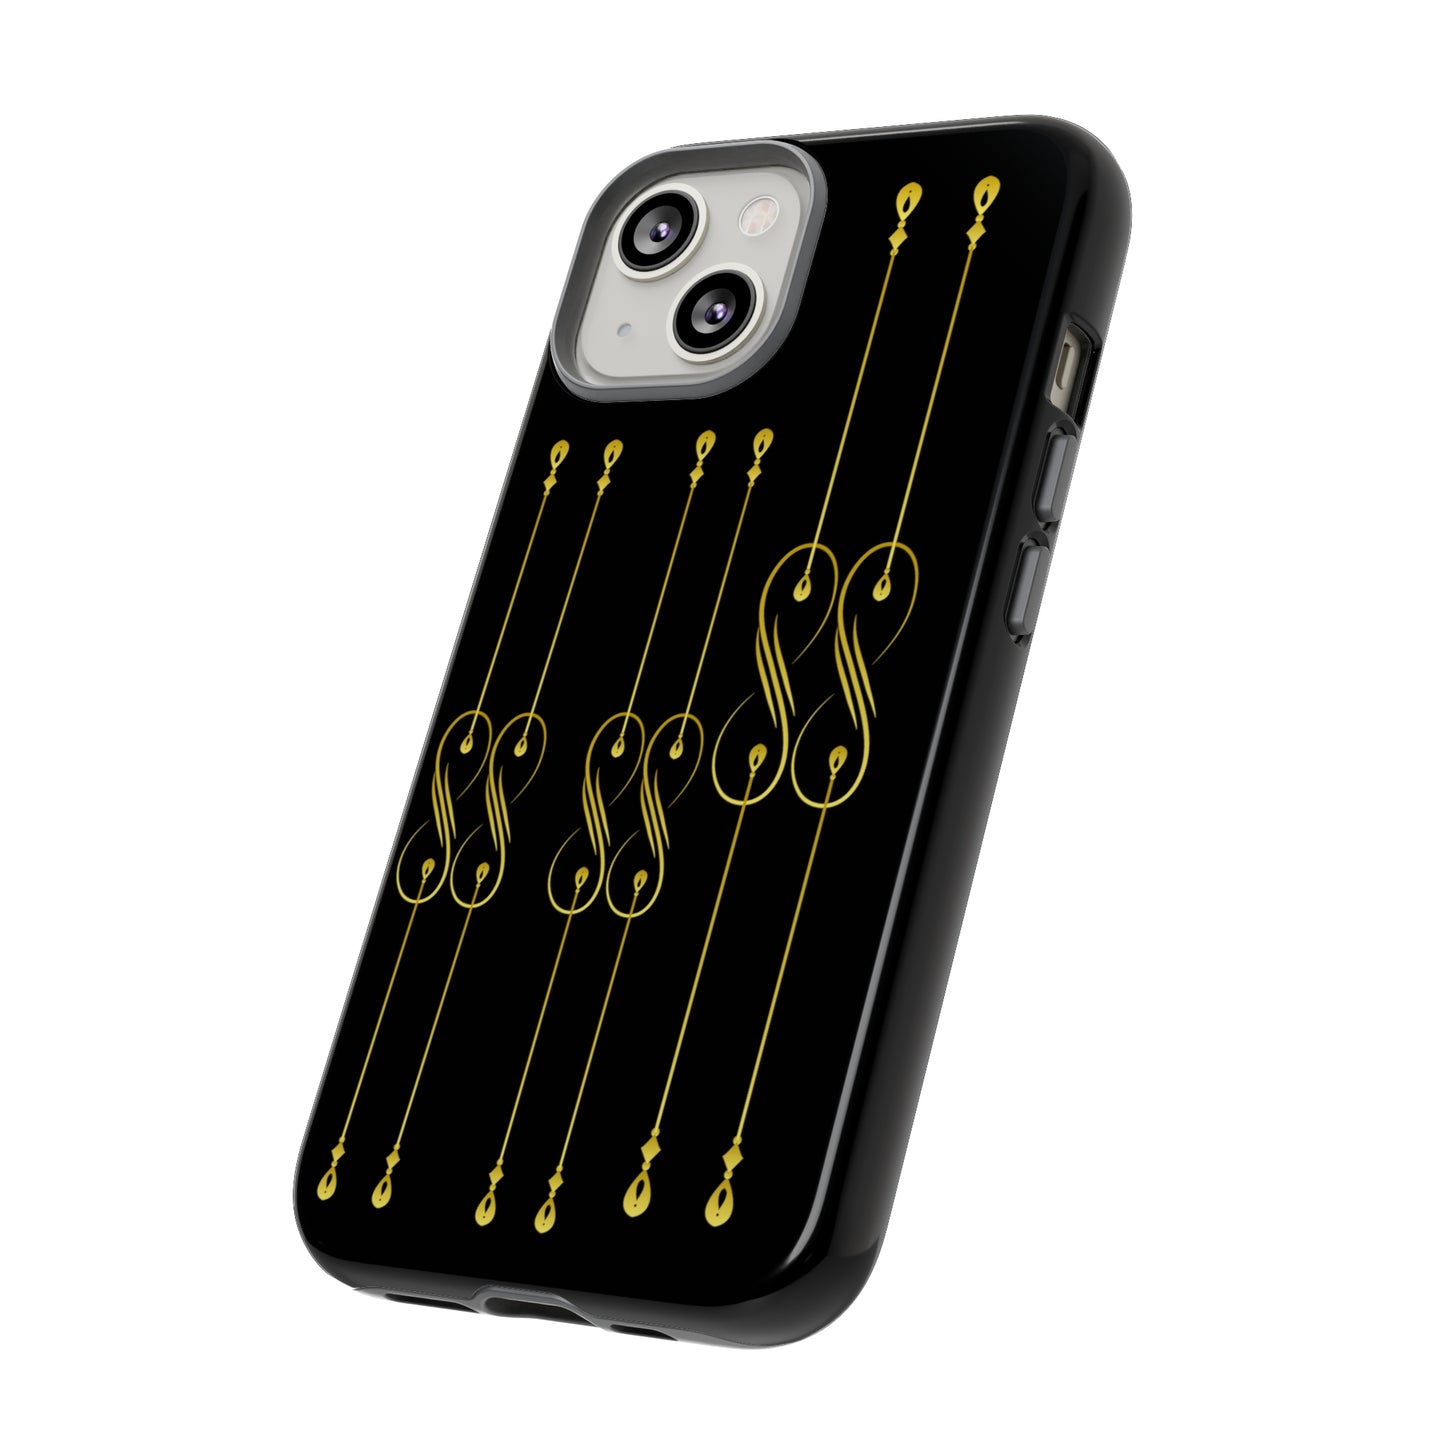 Golden Elegance: Black & Gold Smartphone Armor